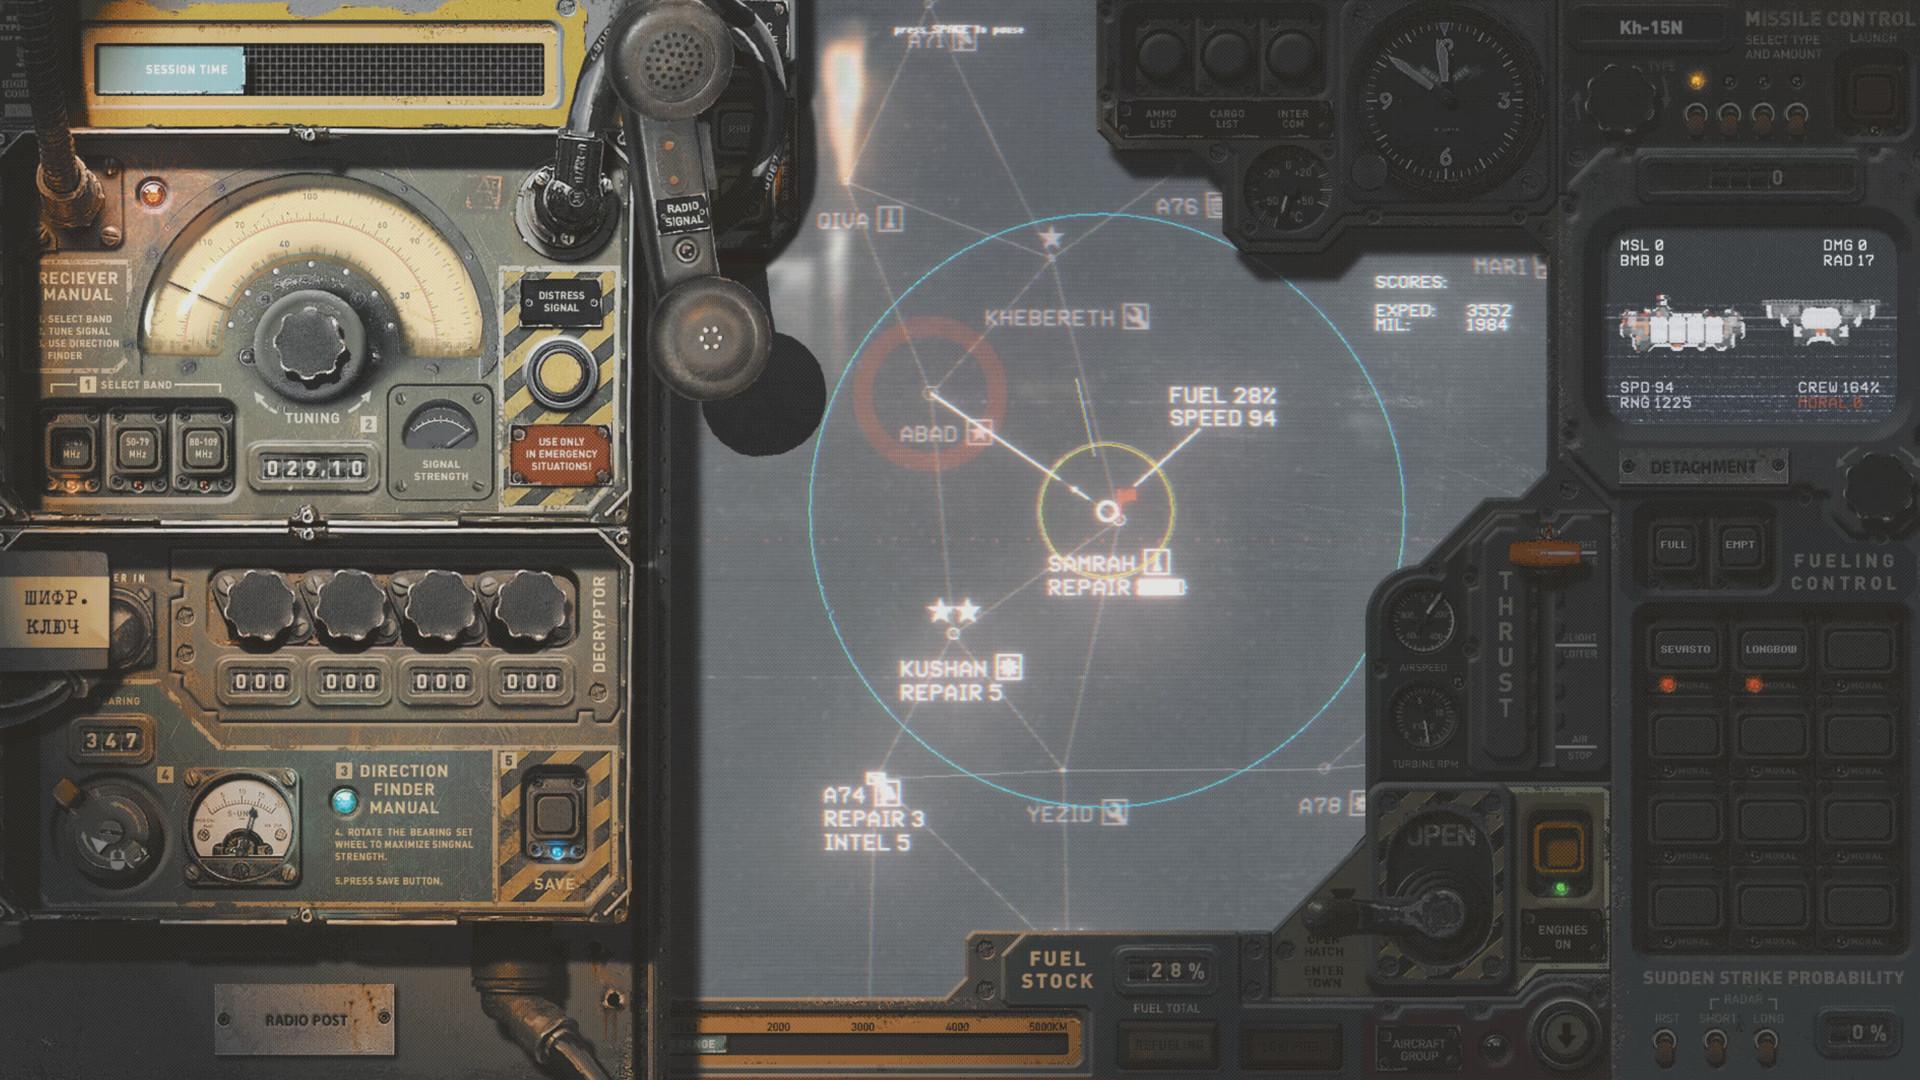 Screenshot №2 from game HighFleet